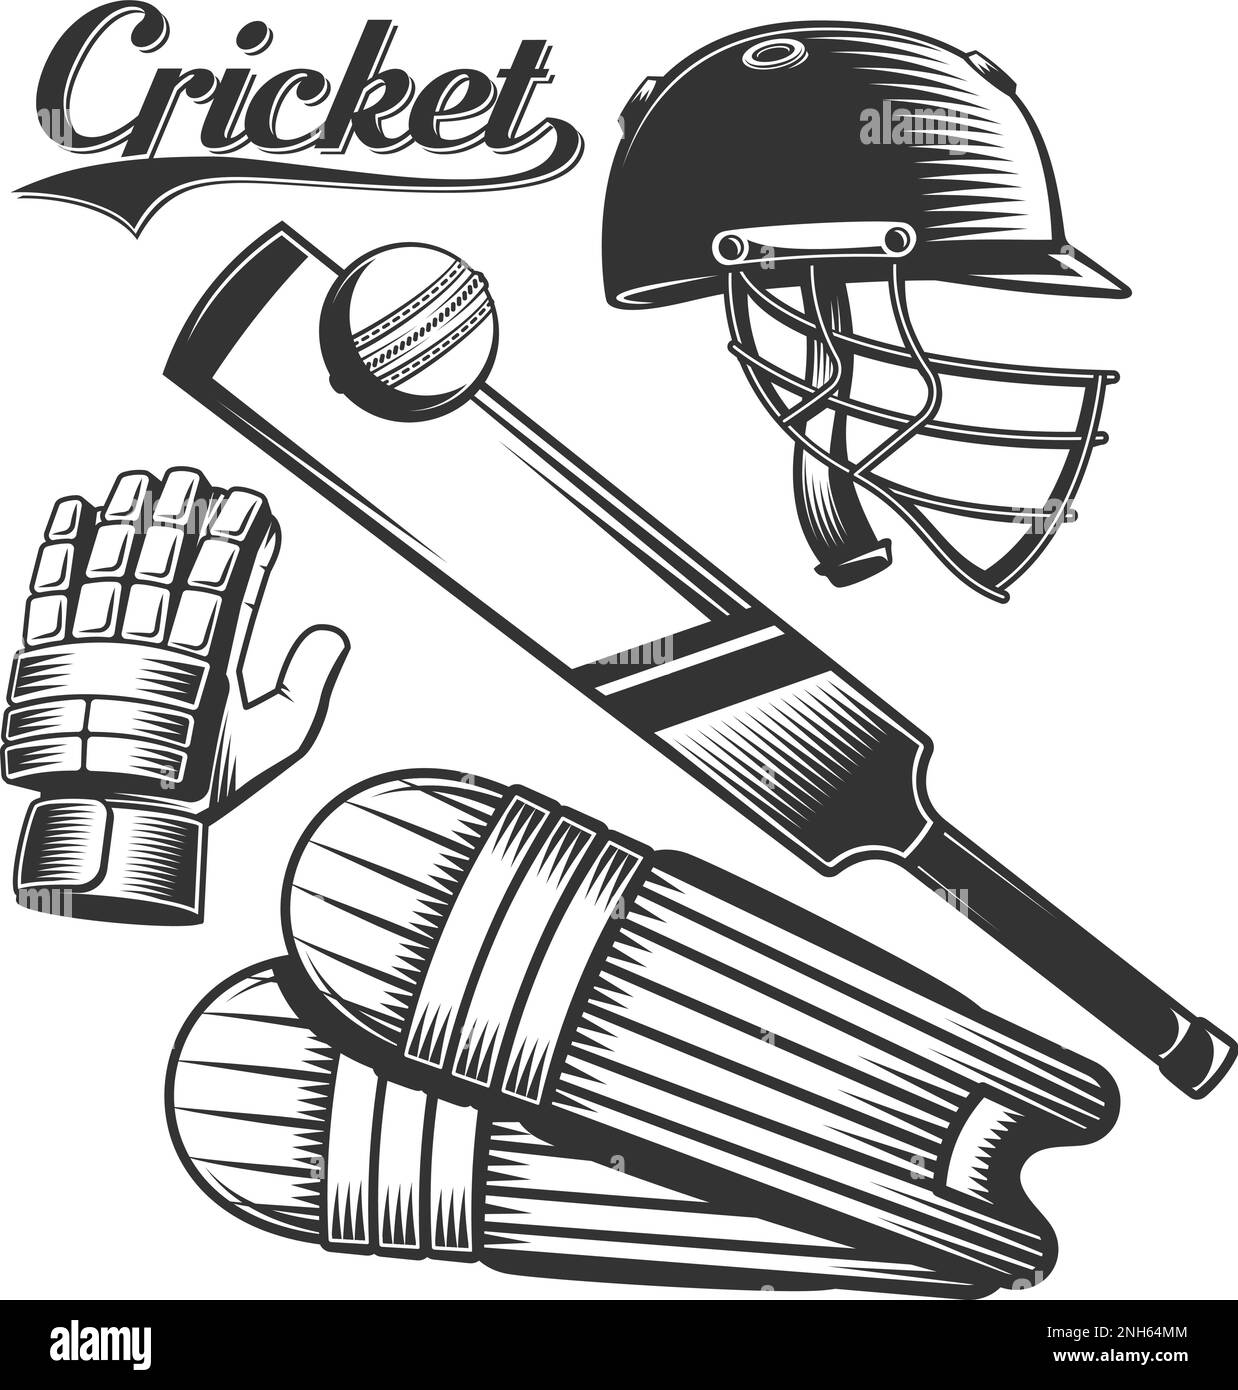 Vetor de Cricket bat and ball with helmet sketch do Stock | Adobe Stock-saigonsouth.com.vn